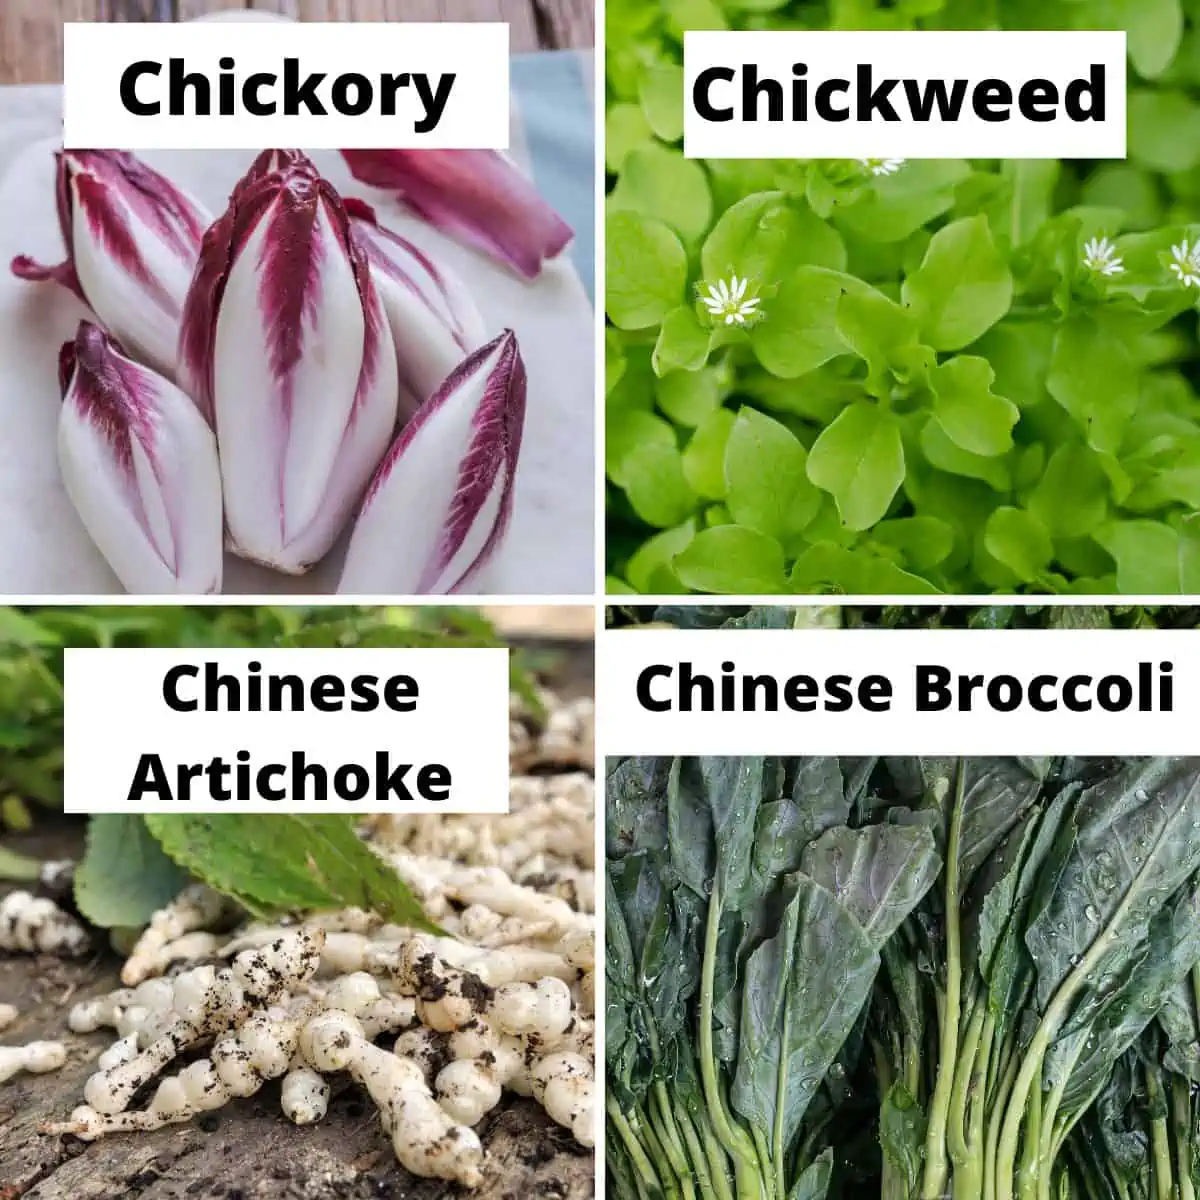 Chickory, chickweed, Chinese artichoke, Chinese broccoli. 